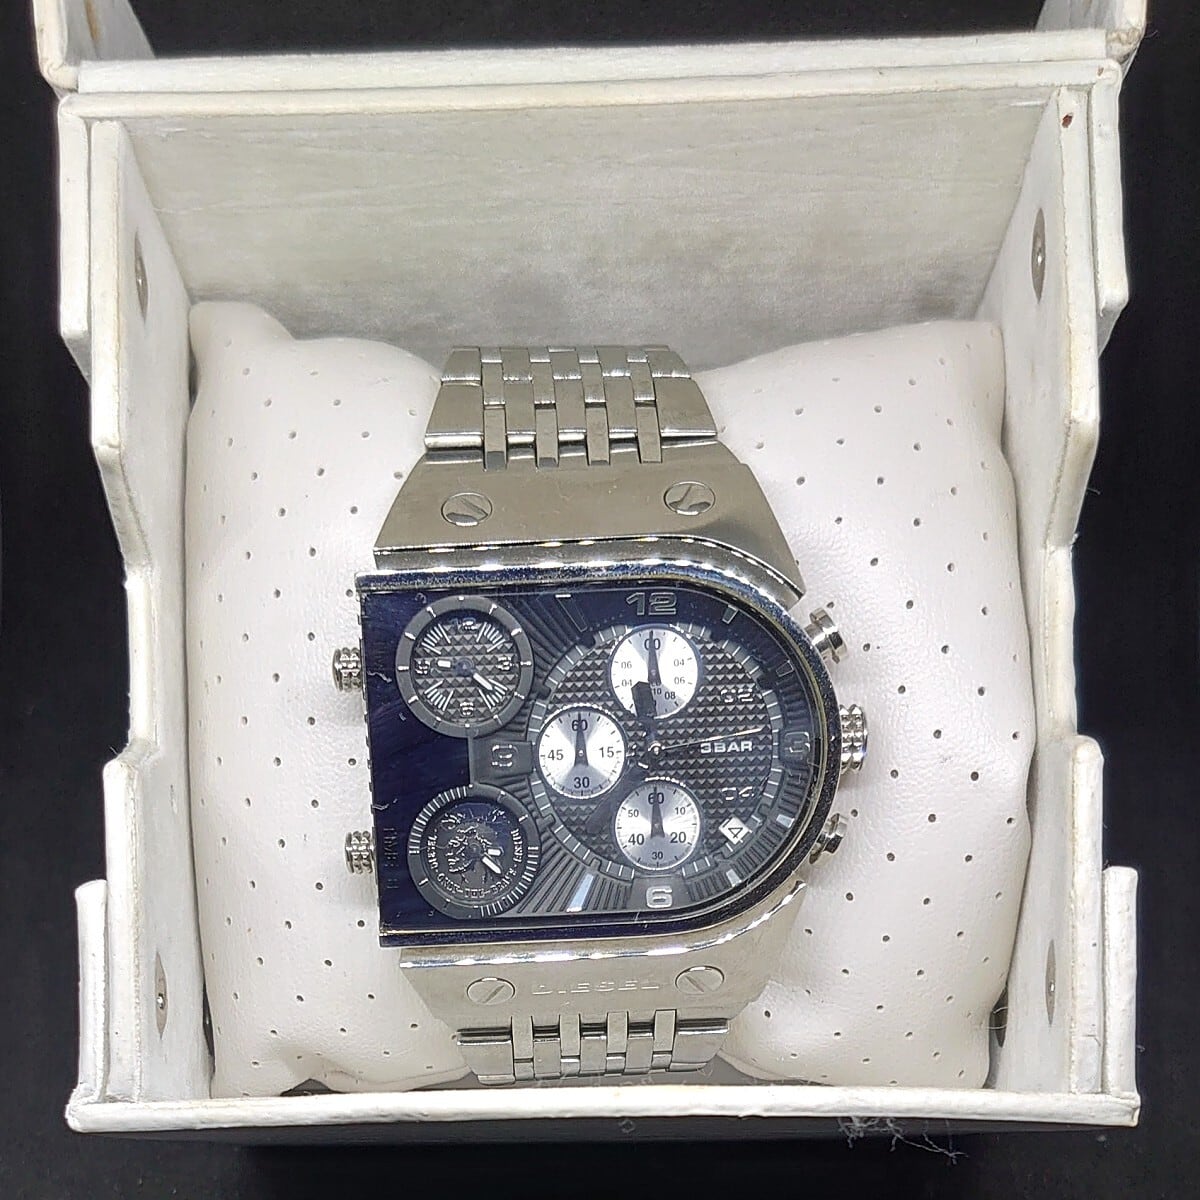 中古】DIESEL 腕時計 dz9052 トリプルタイム※電池切れの為動作未確認